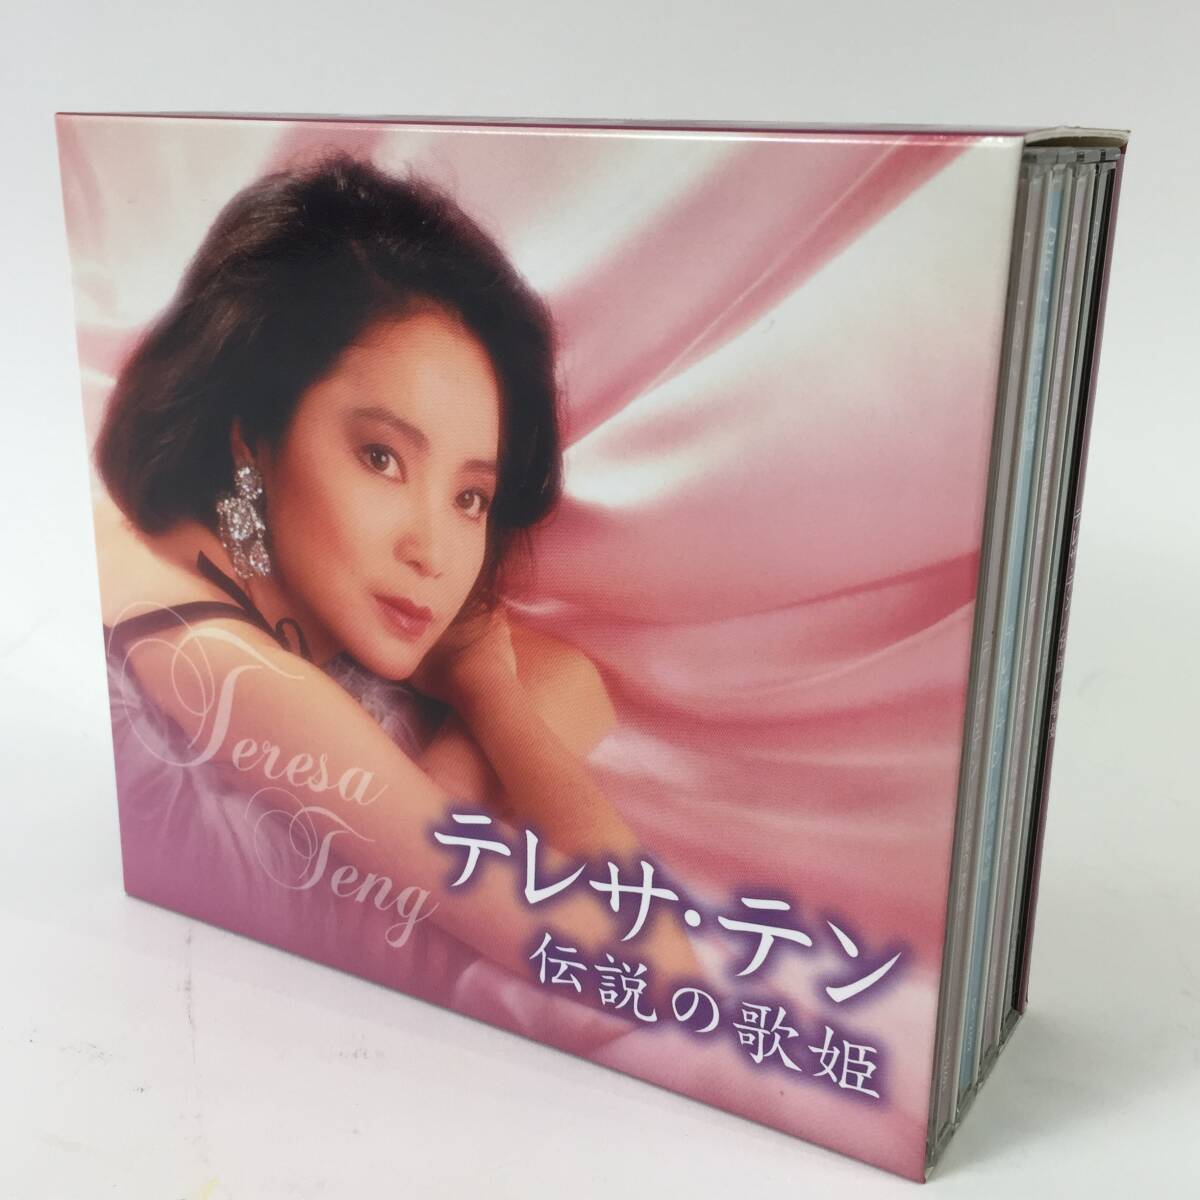 テレサテン 伝説の歌姫 CDボックス 特典DVD付 愛人 別れの予感 時の流れに身をまかせ 24c菊TKの画像1